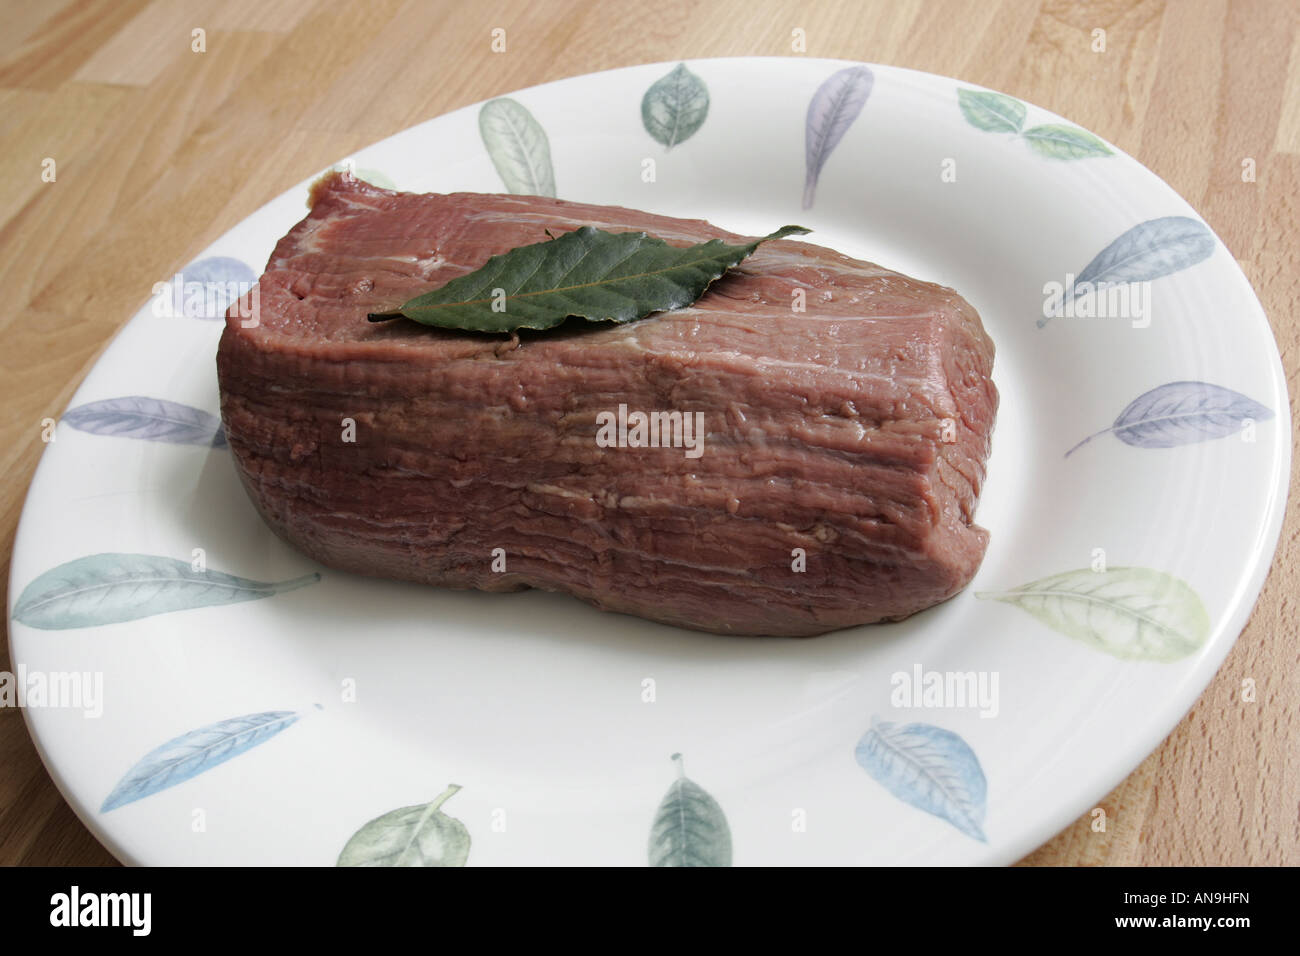 Una porzione di carne di manzo crudo su una piastra. Foto Stock